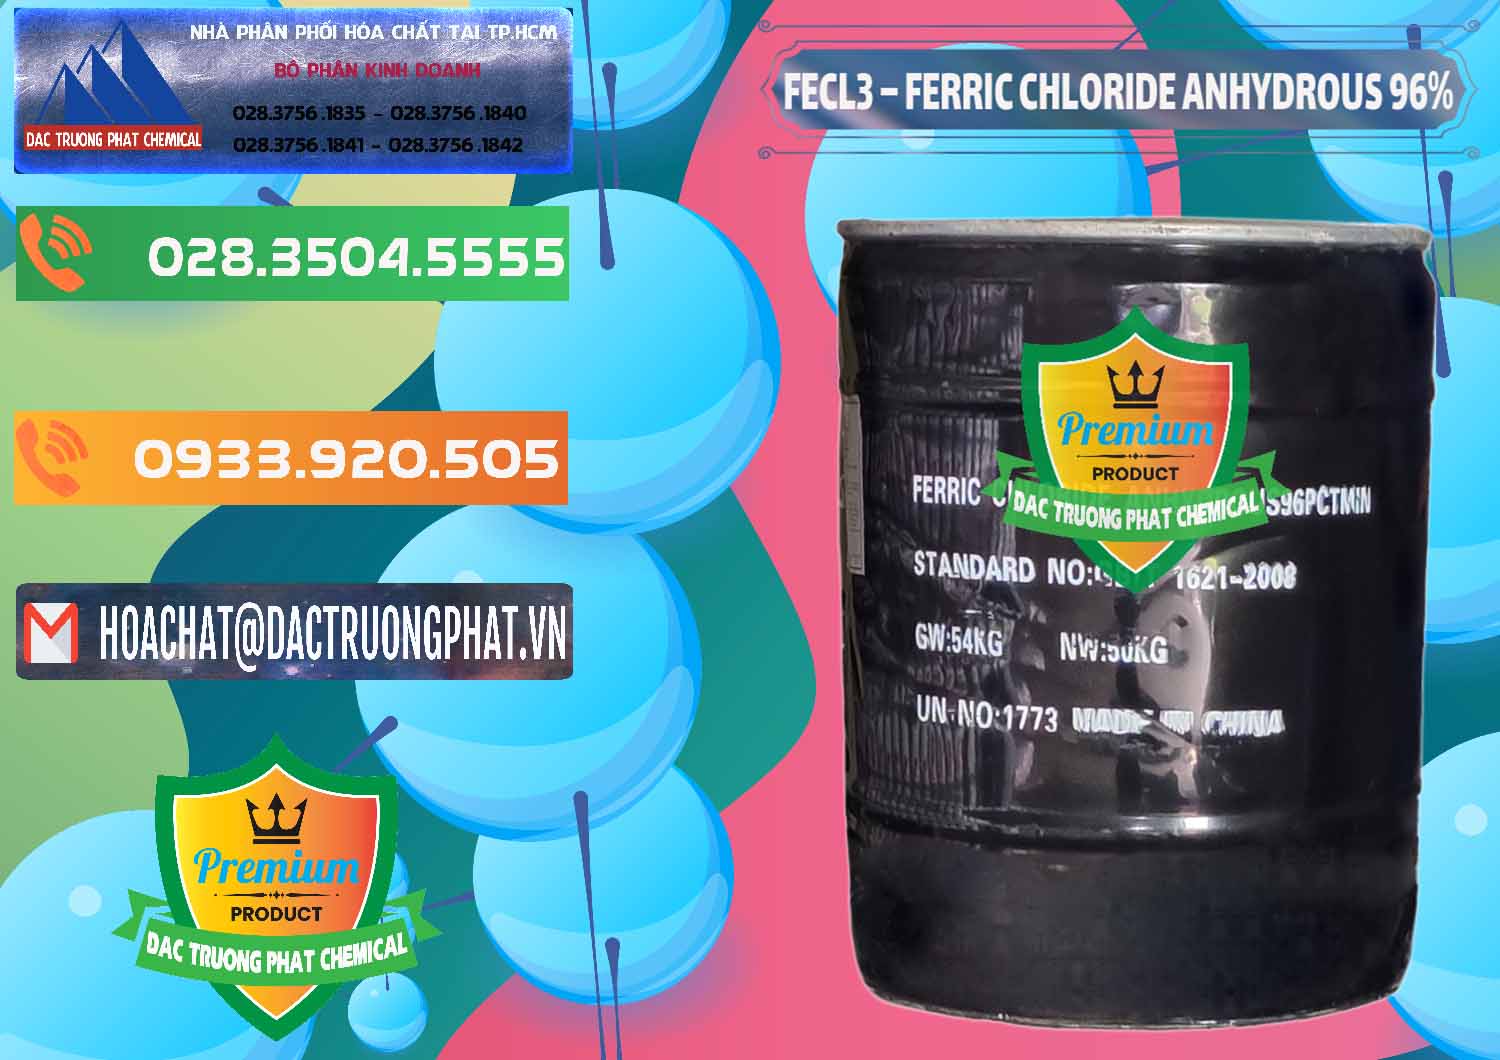 Đơn vị chuyên bán - cung cấp FECL3 – Ferric Chloride Anhydrous 96% Trung Quốc China - 0065 - Cty chuyên cung cấp _ nhập khẩu hóa chất tại TP.HCM - hoachatxulynuoc.com.vn